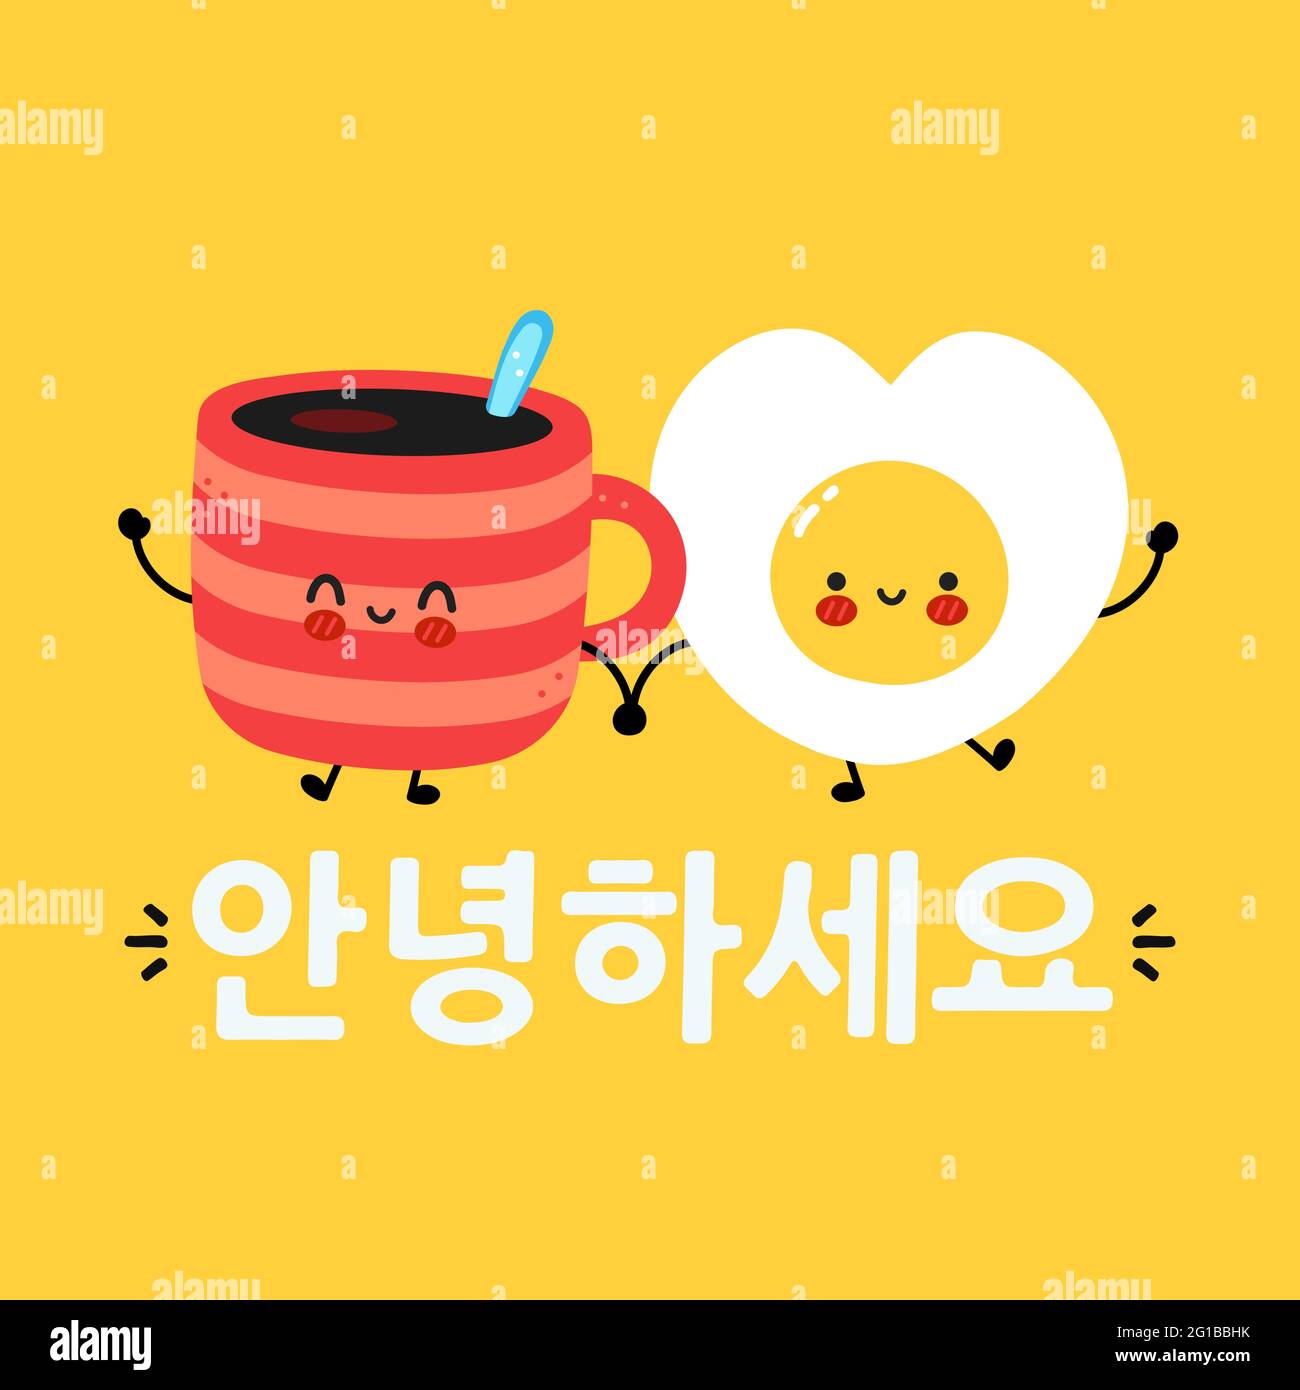 Carino divertente tazza di caffè felice e uovo fritto carattere. Citazione coreana. Icona raffigurante il carattere kawaii del fumetto disegnato a mano del vettore. Corea buona mattina carta, banner concetto Illustrazione Vettoriale